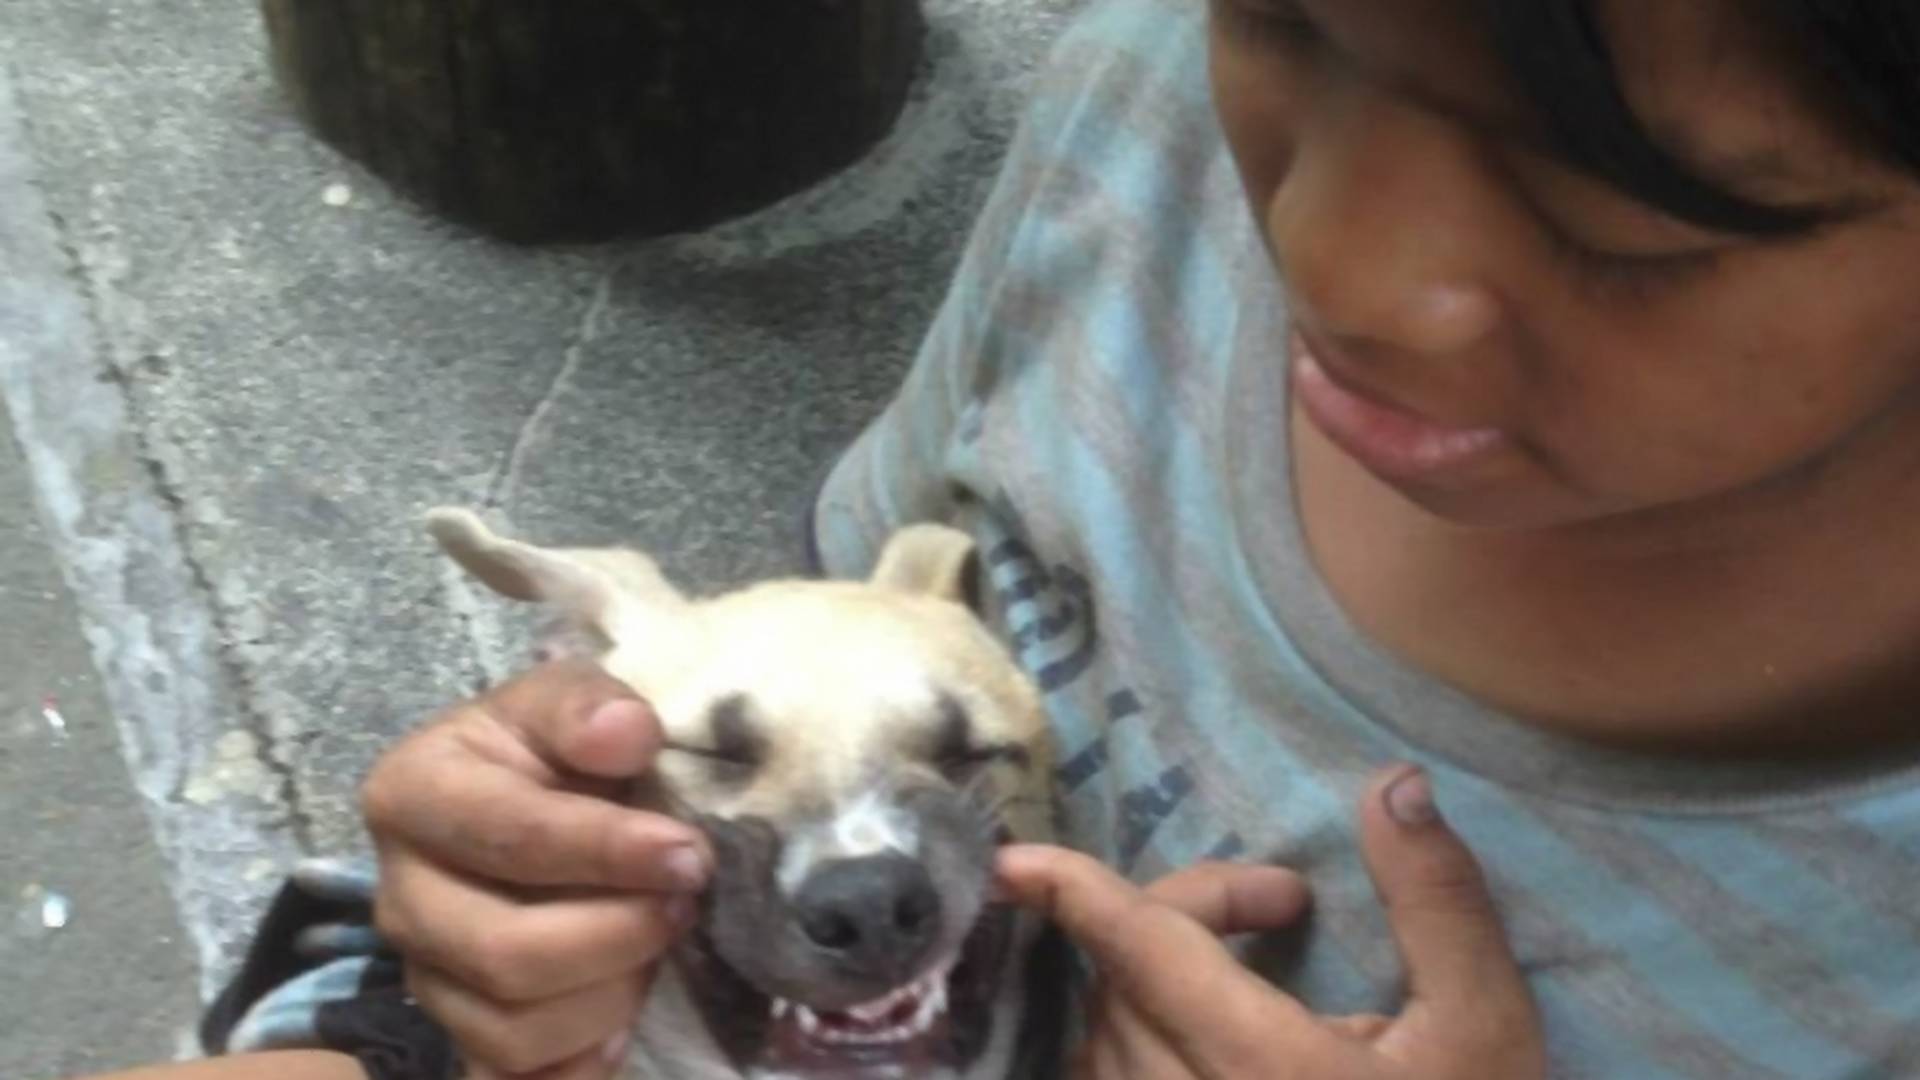 Ljubav je stigla u život dečaka beskućnika koji je spasao uličnog psa